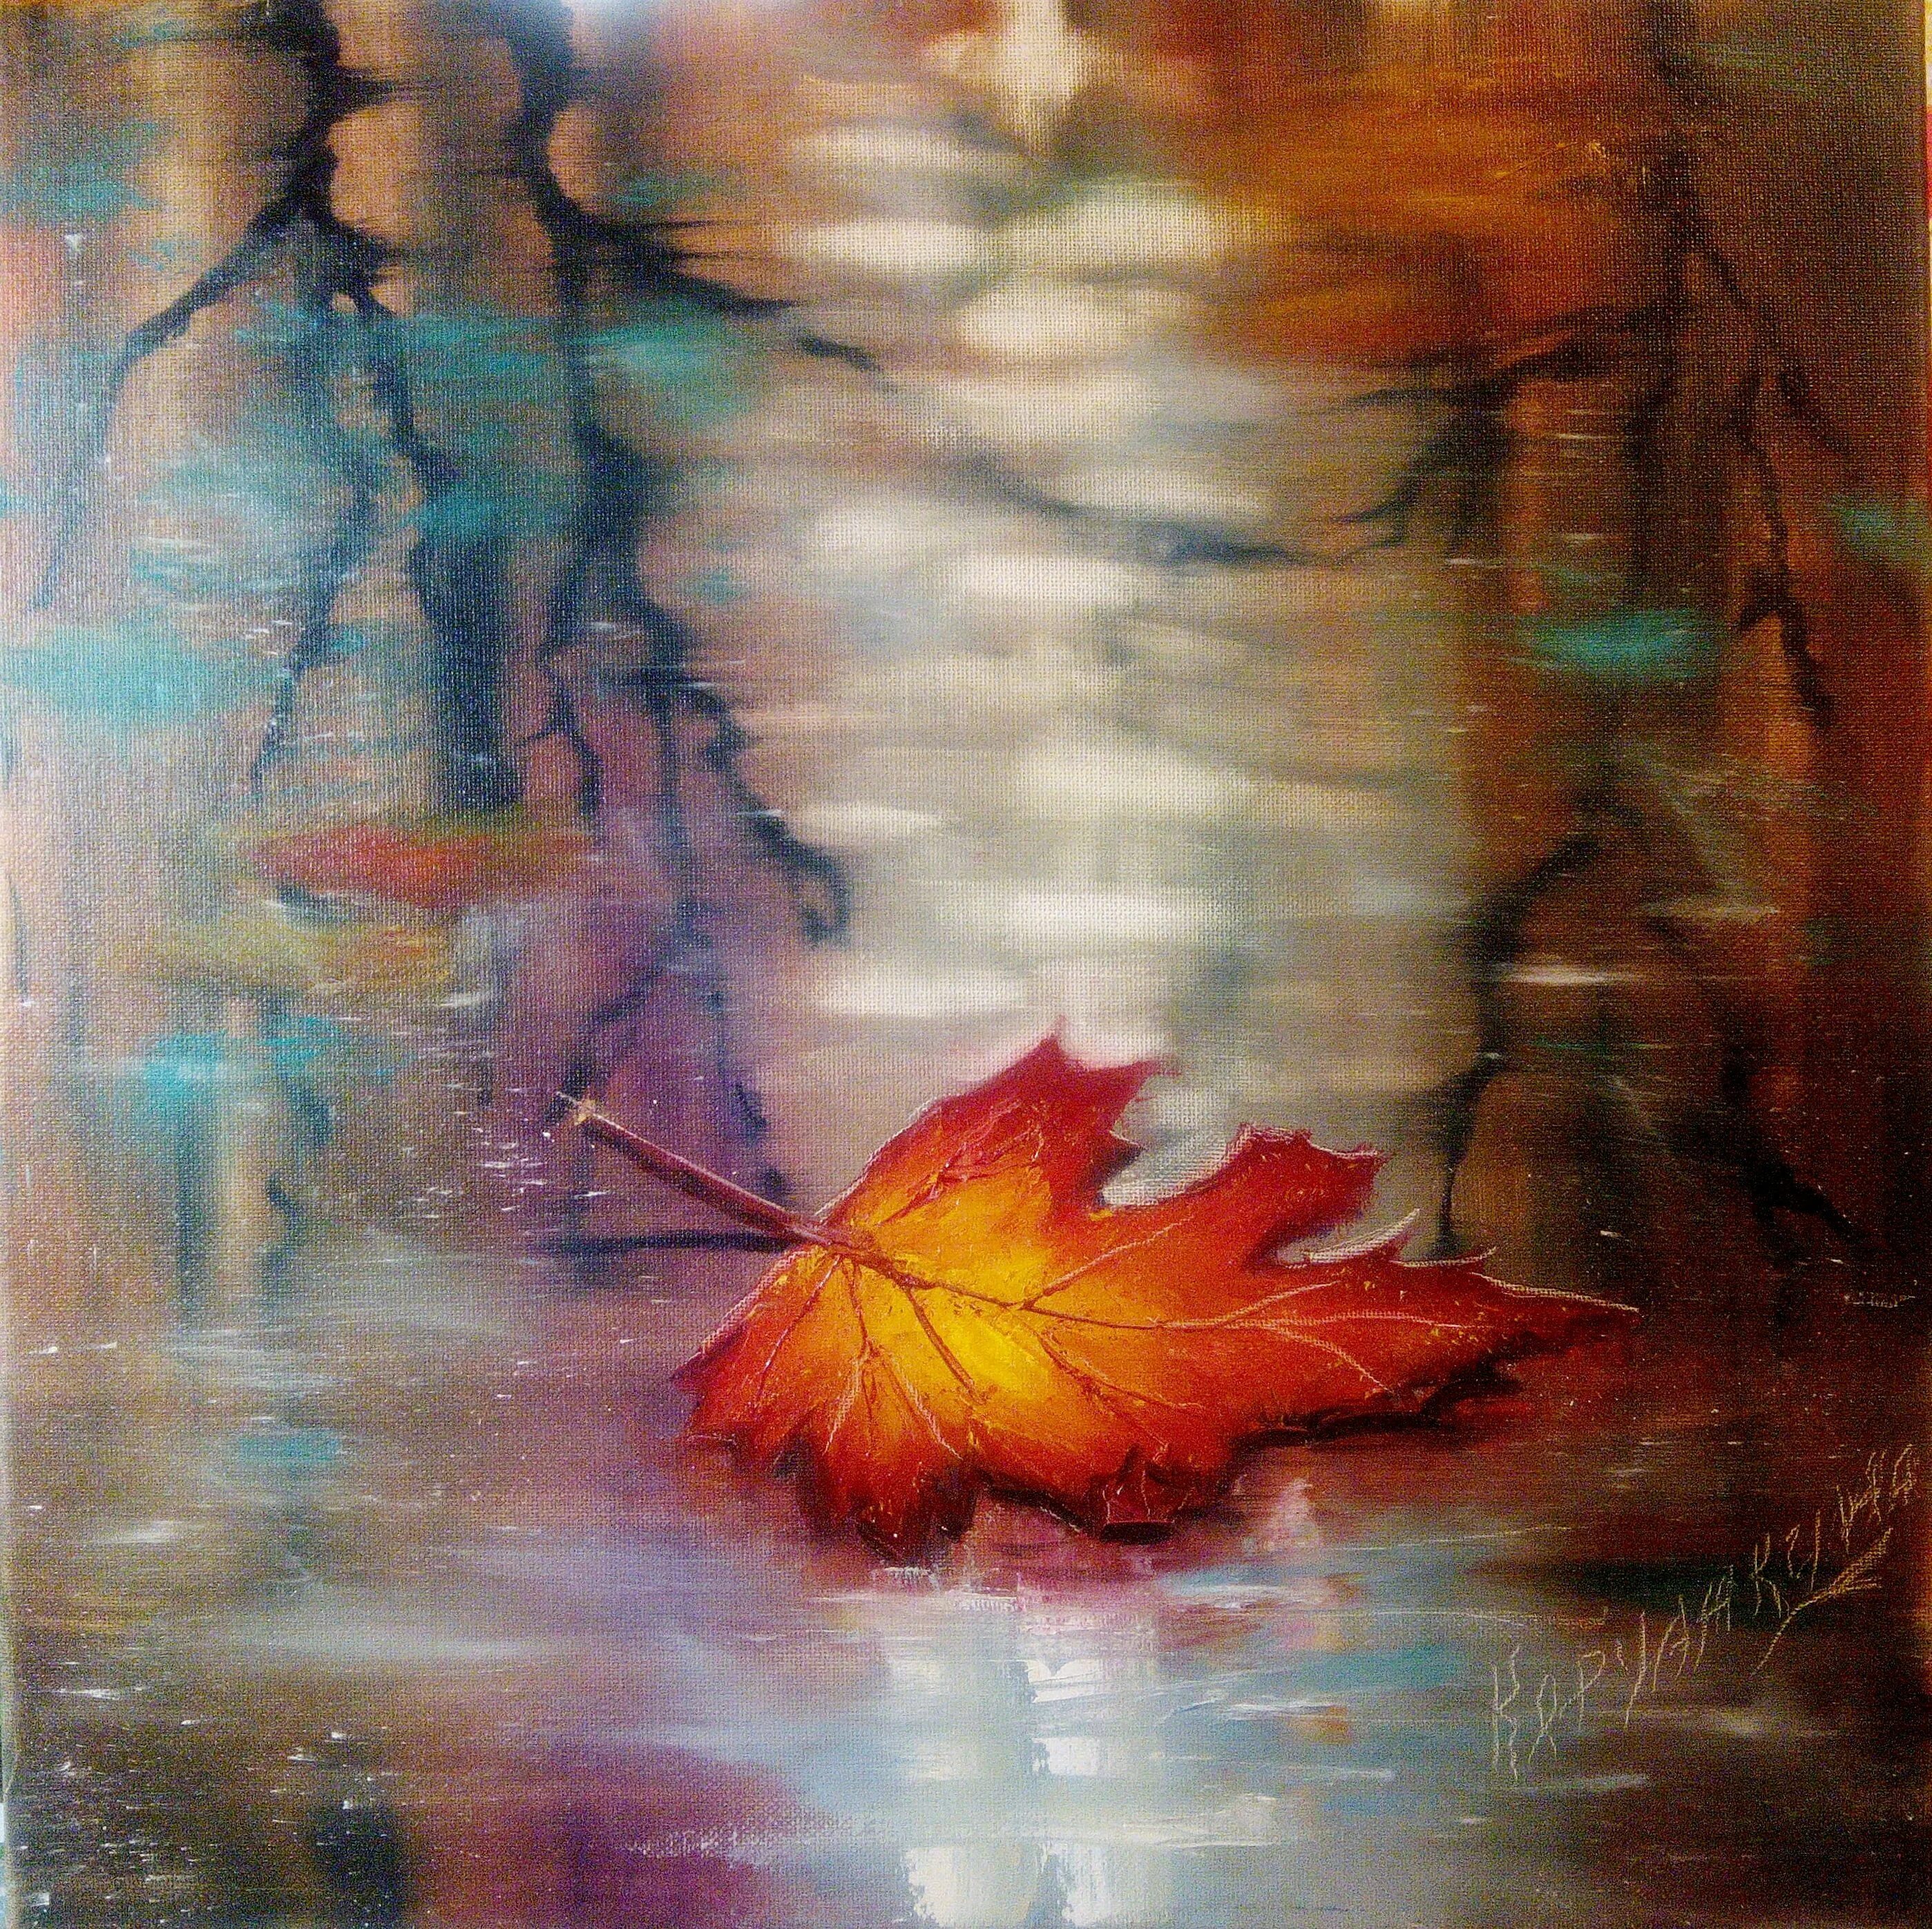 Жизнь похожа. Осень нашей жизни. Цитаты про осень. Осень афоризмы и мысли. Осень философия жизни.